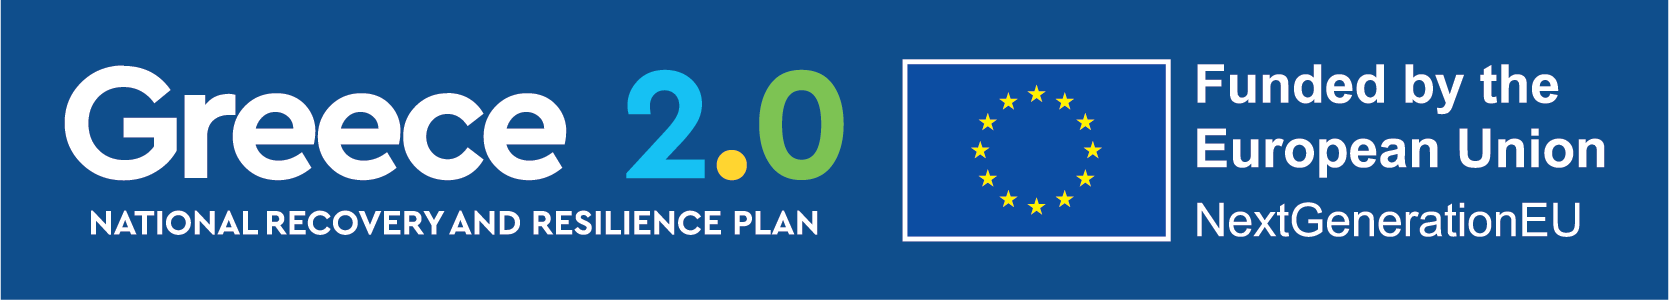 Ελλάδα 2.0 - Με τη χρηματοδότηση της Ευρωπαϊκής Ένωσης – NextGenerationEU